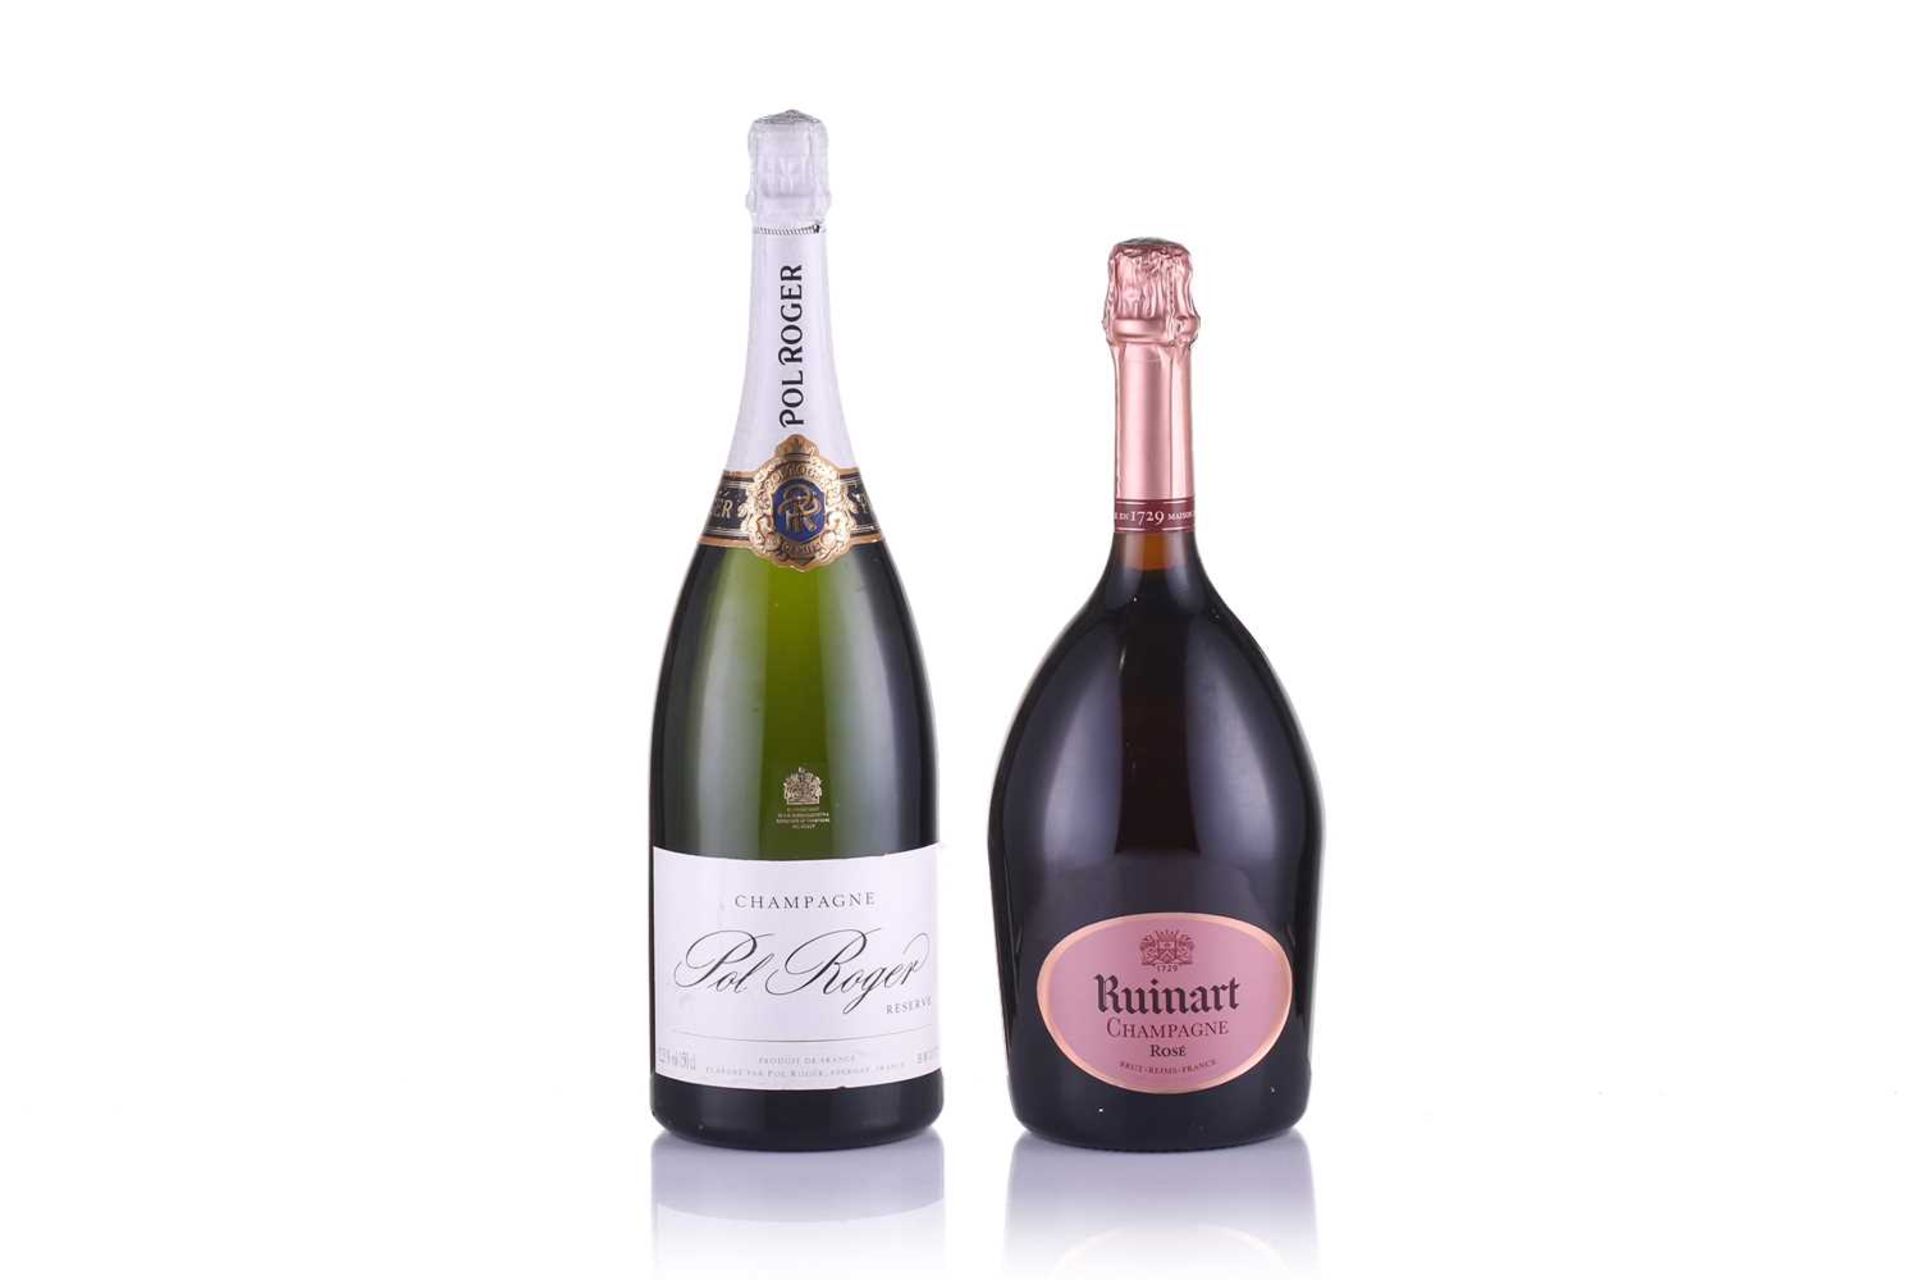 A Magnum of Ruinart Brut Rose Champagne, 1.5lt, 12.5%, together with a Magnum of Pol Roger Brut